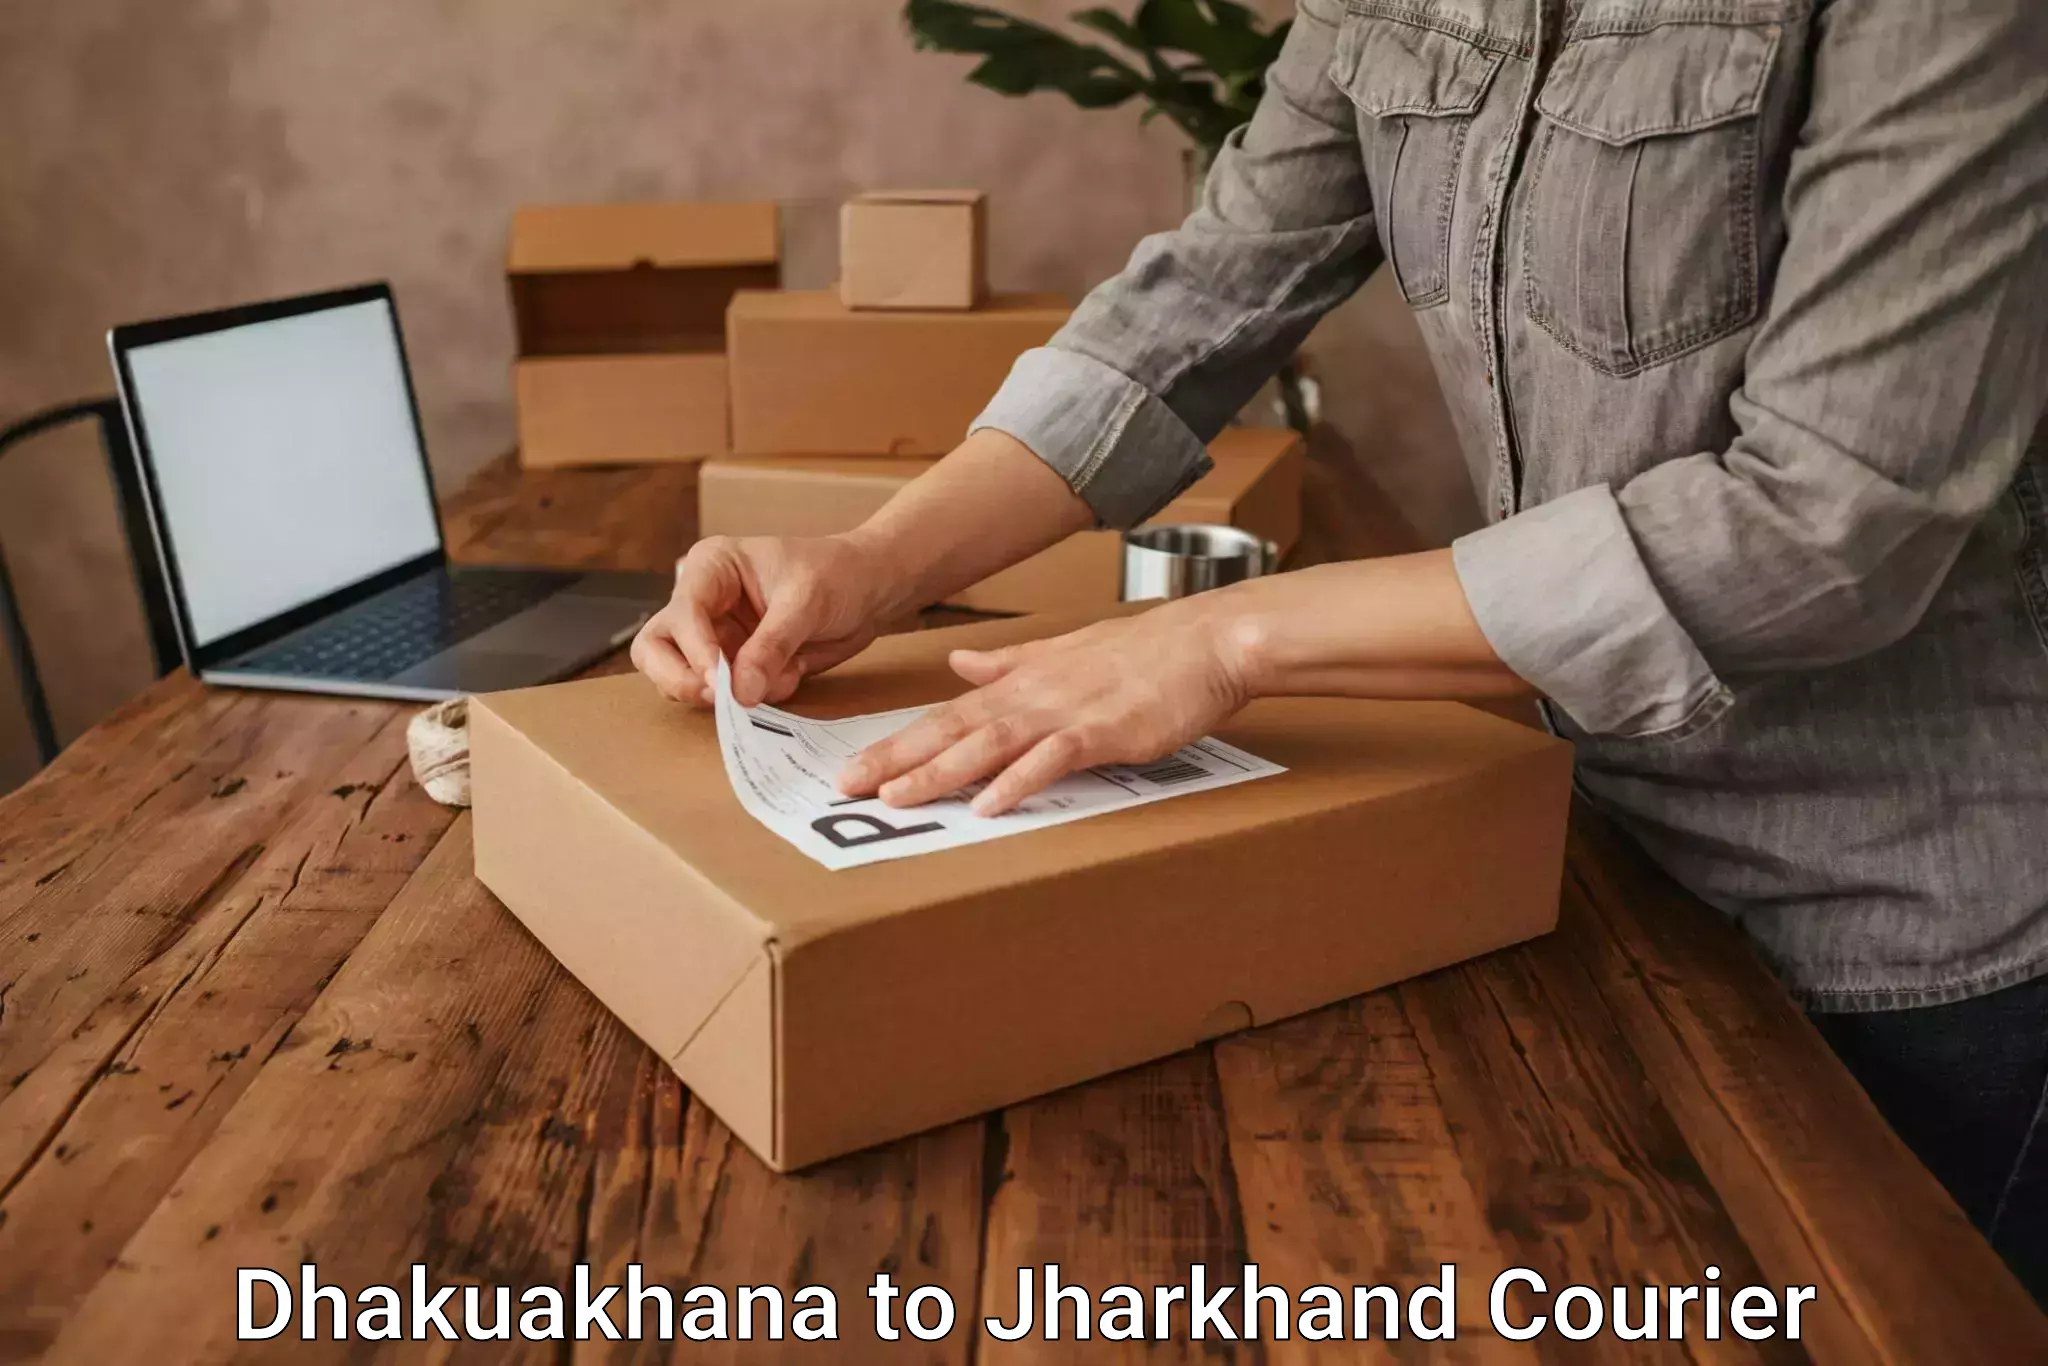 Courier service innovation Dhakuakhana to Jharkhand